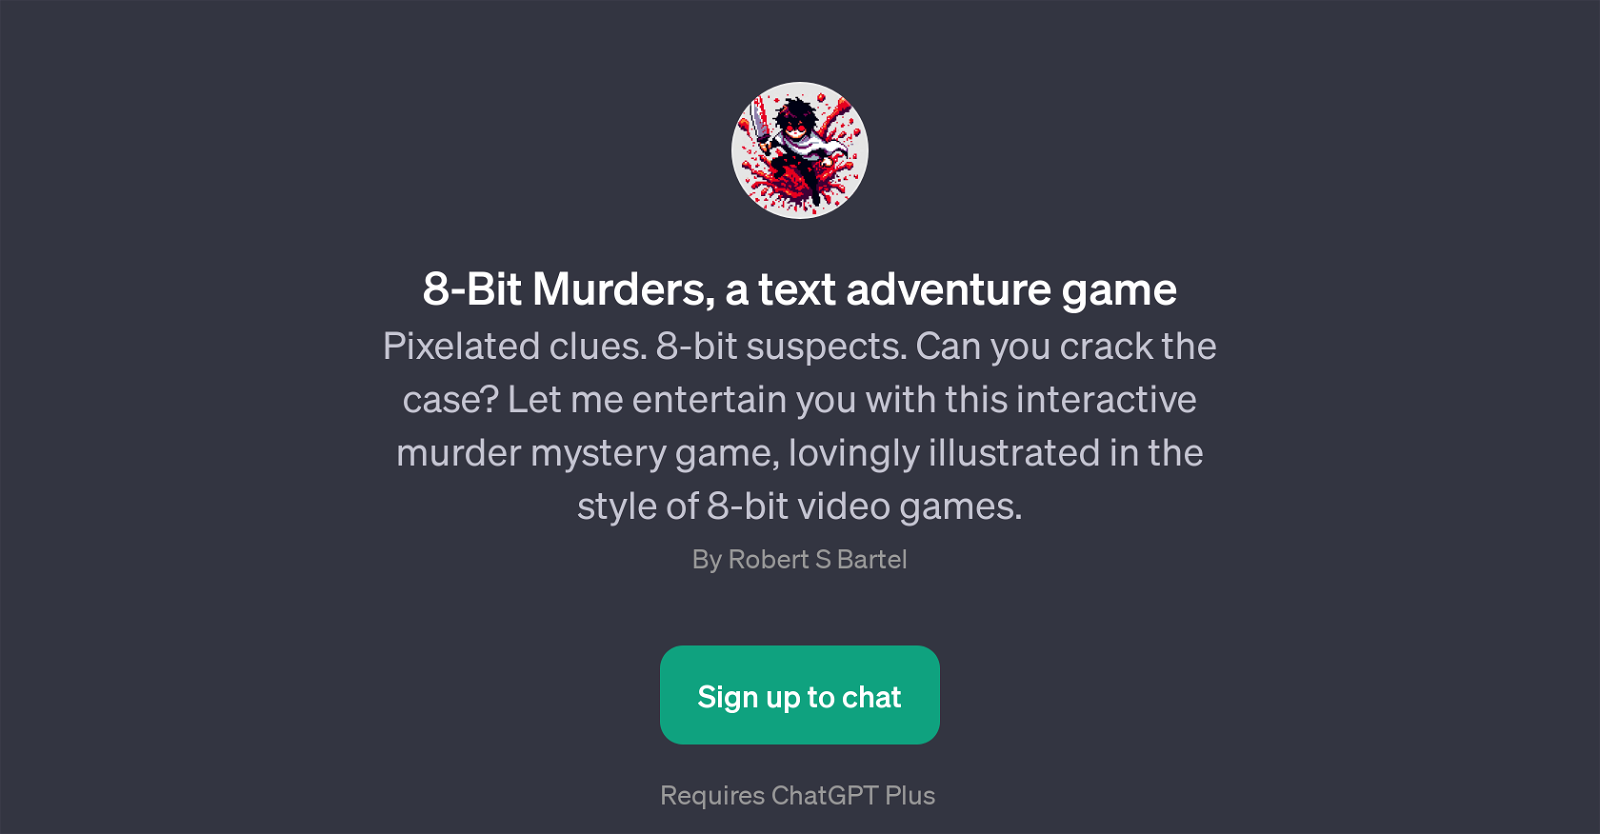 8-Bit Murders website